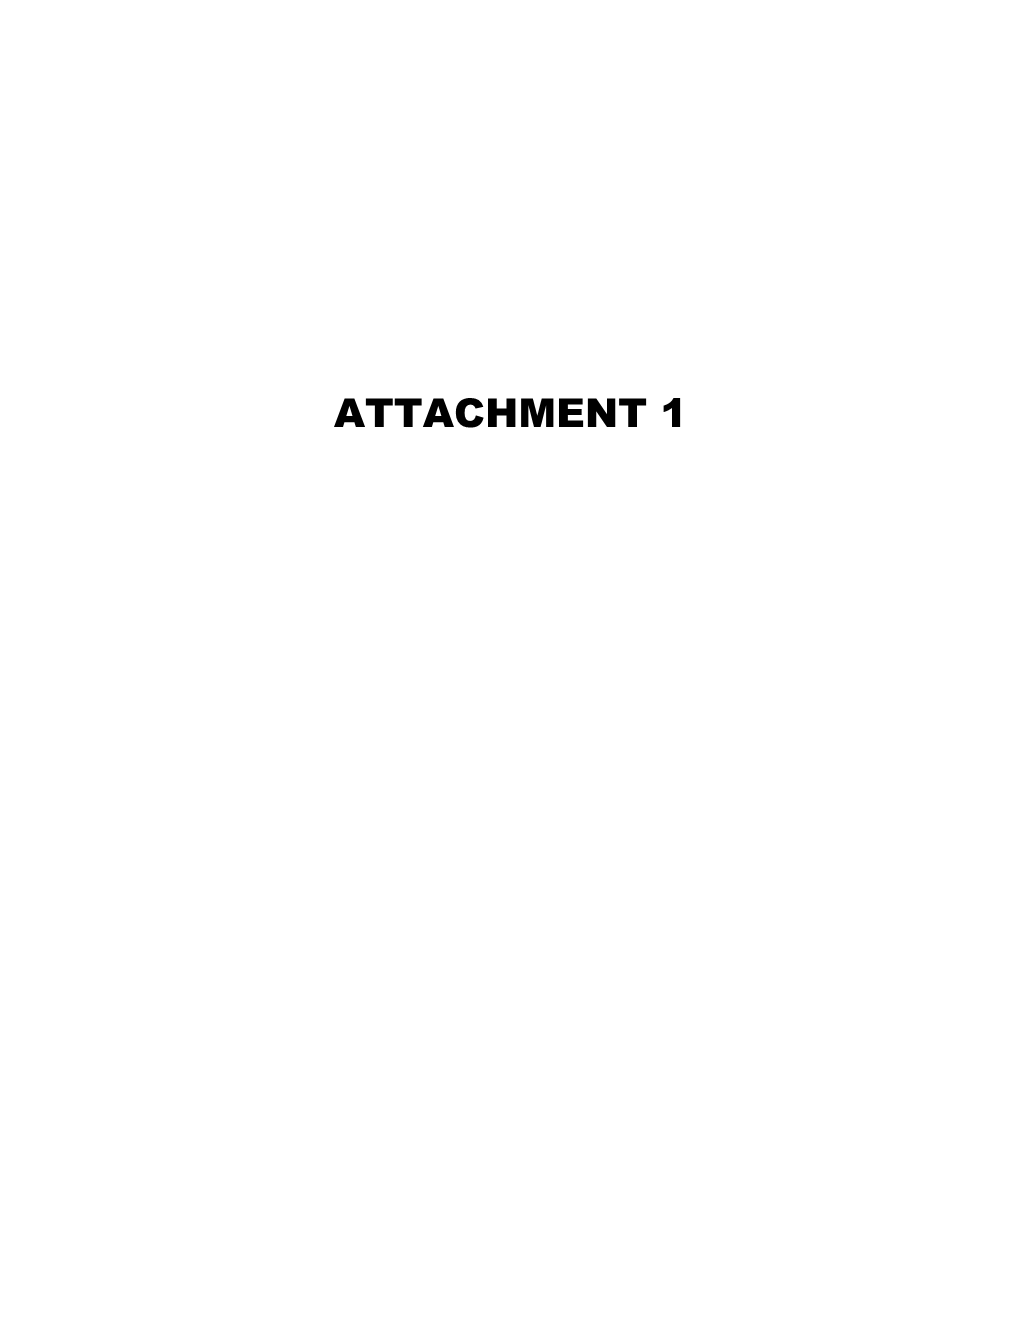 Attachment 1